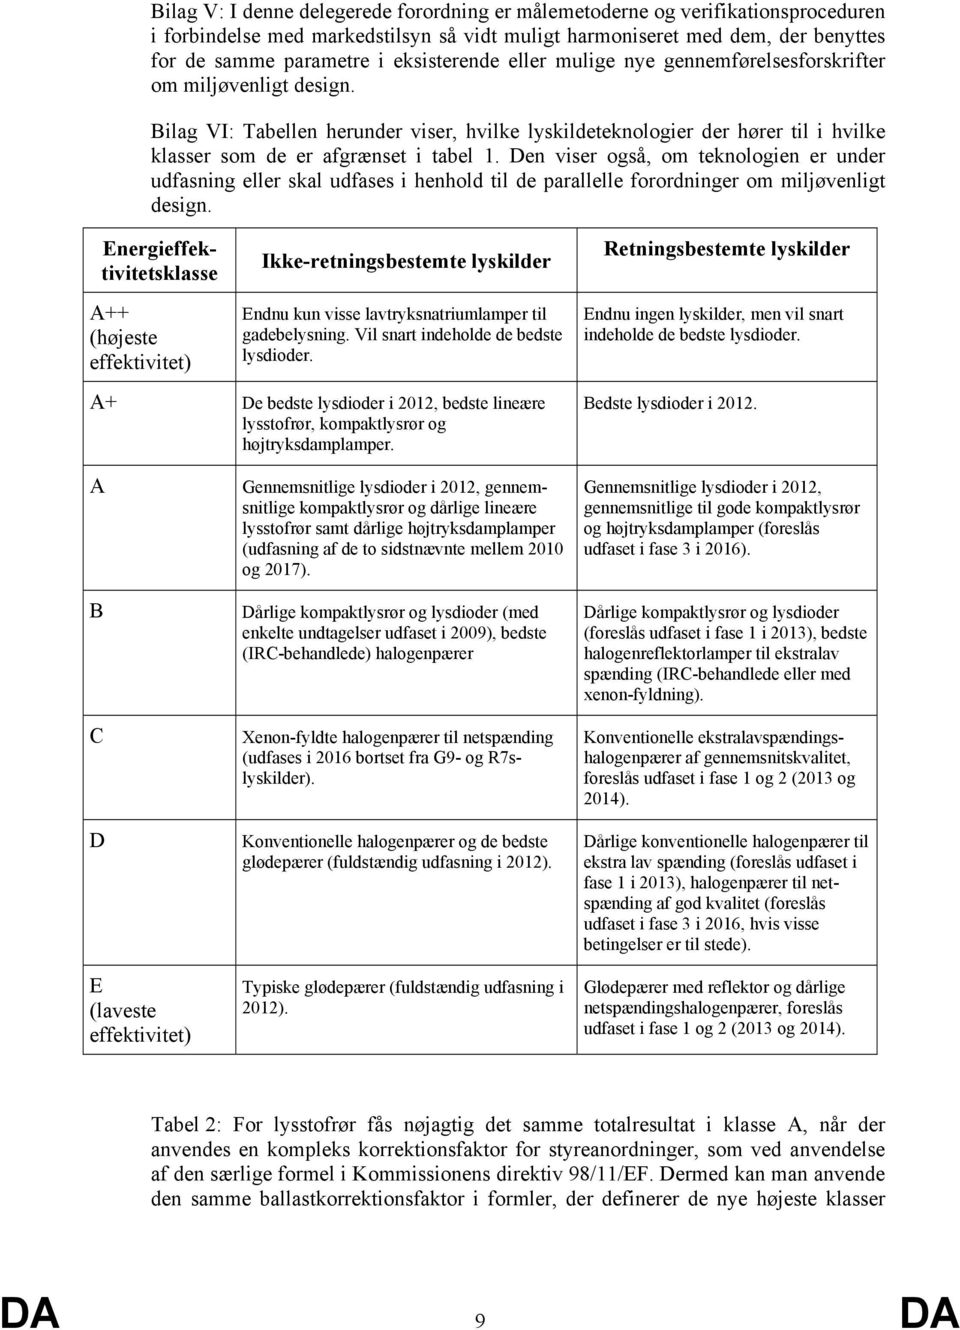 Bilag VI: Tabellen herunder viser, hvilke lyskildeteknologier der hører til i hvilke klasser som de er afgrænset i tabel 1.